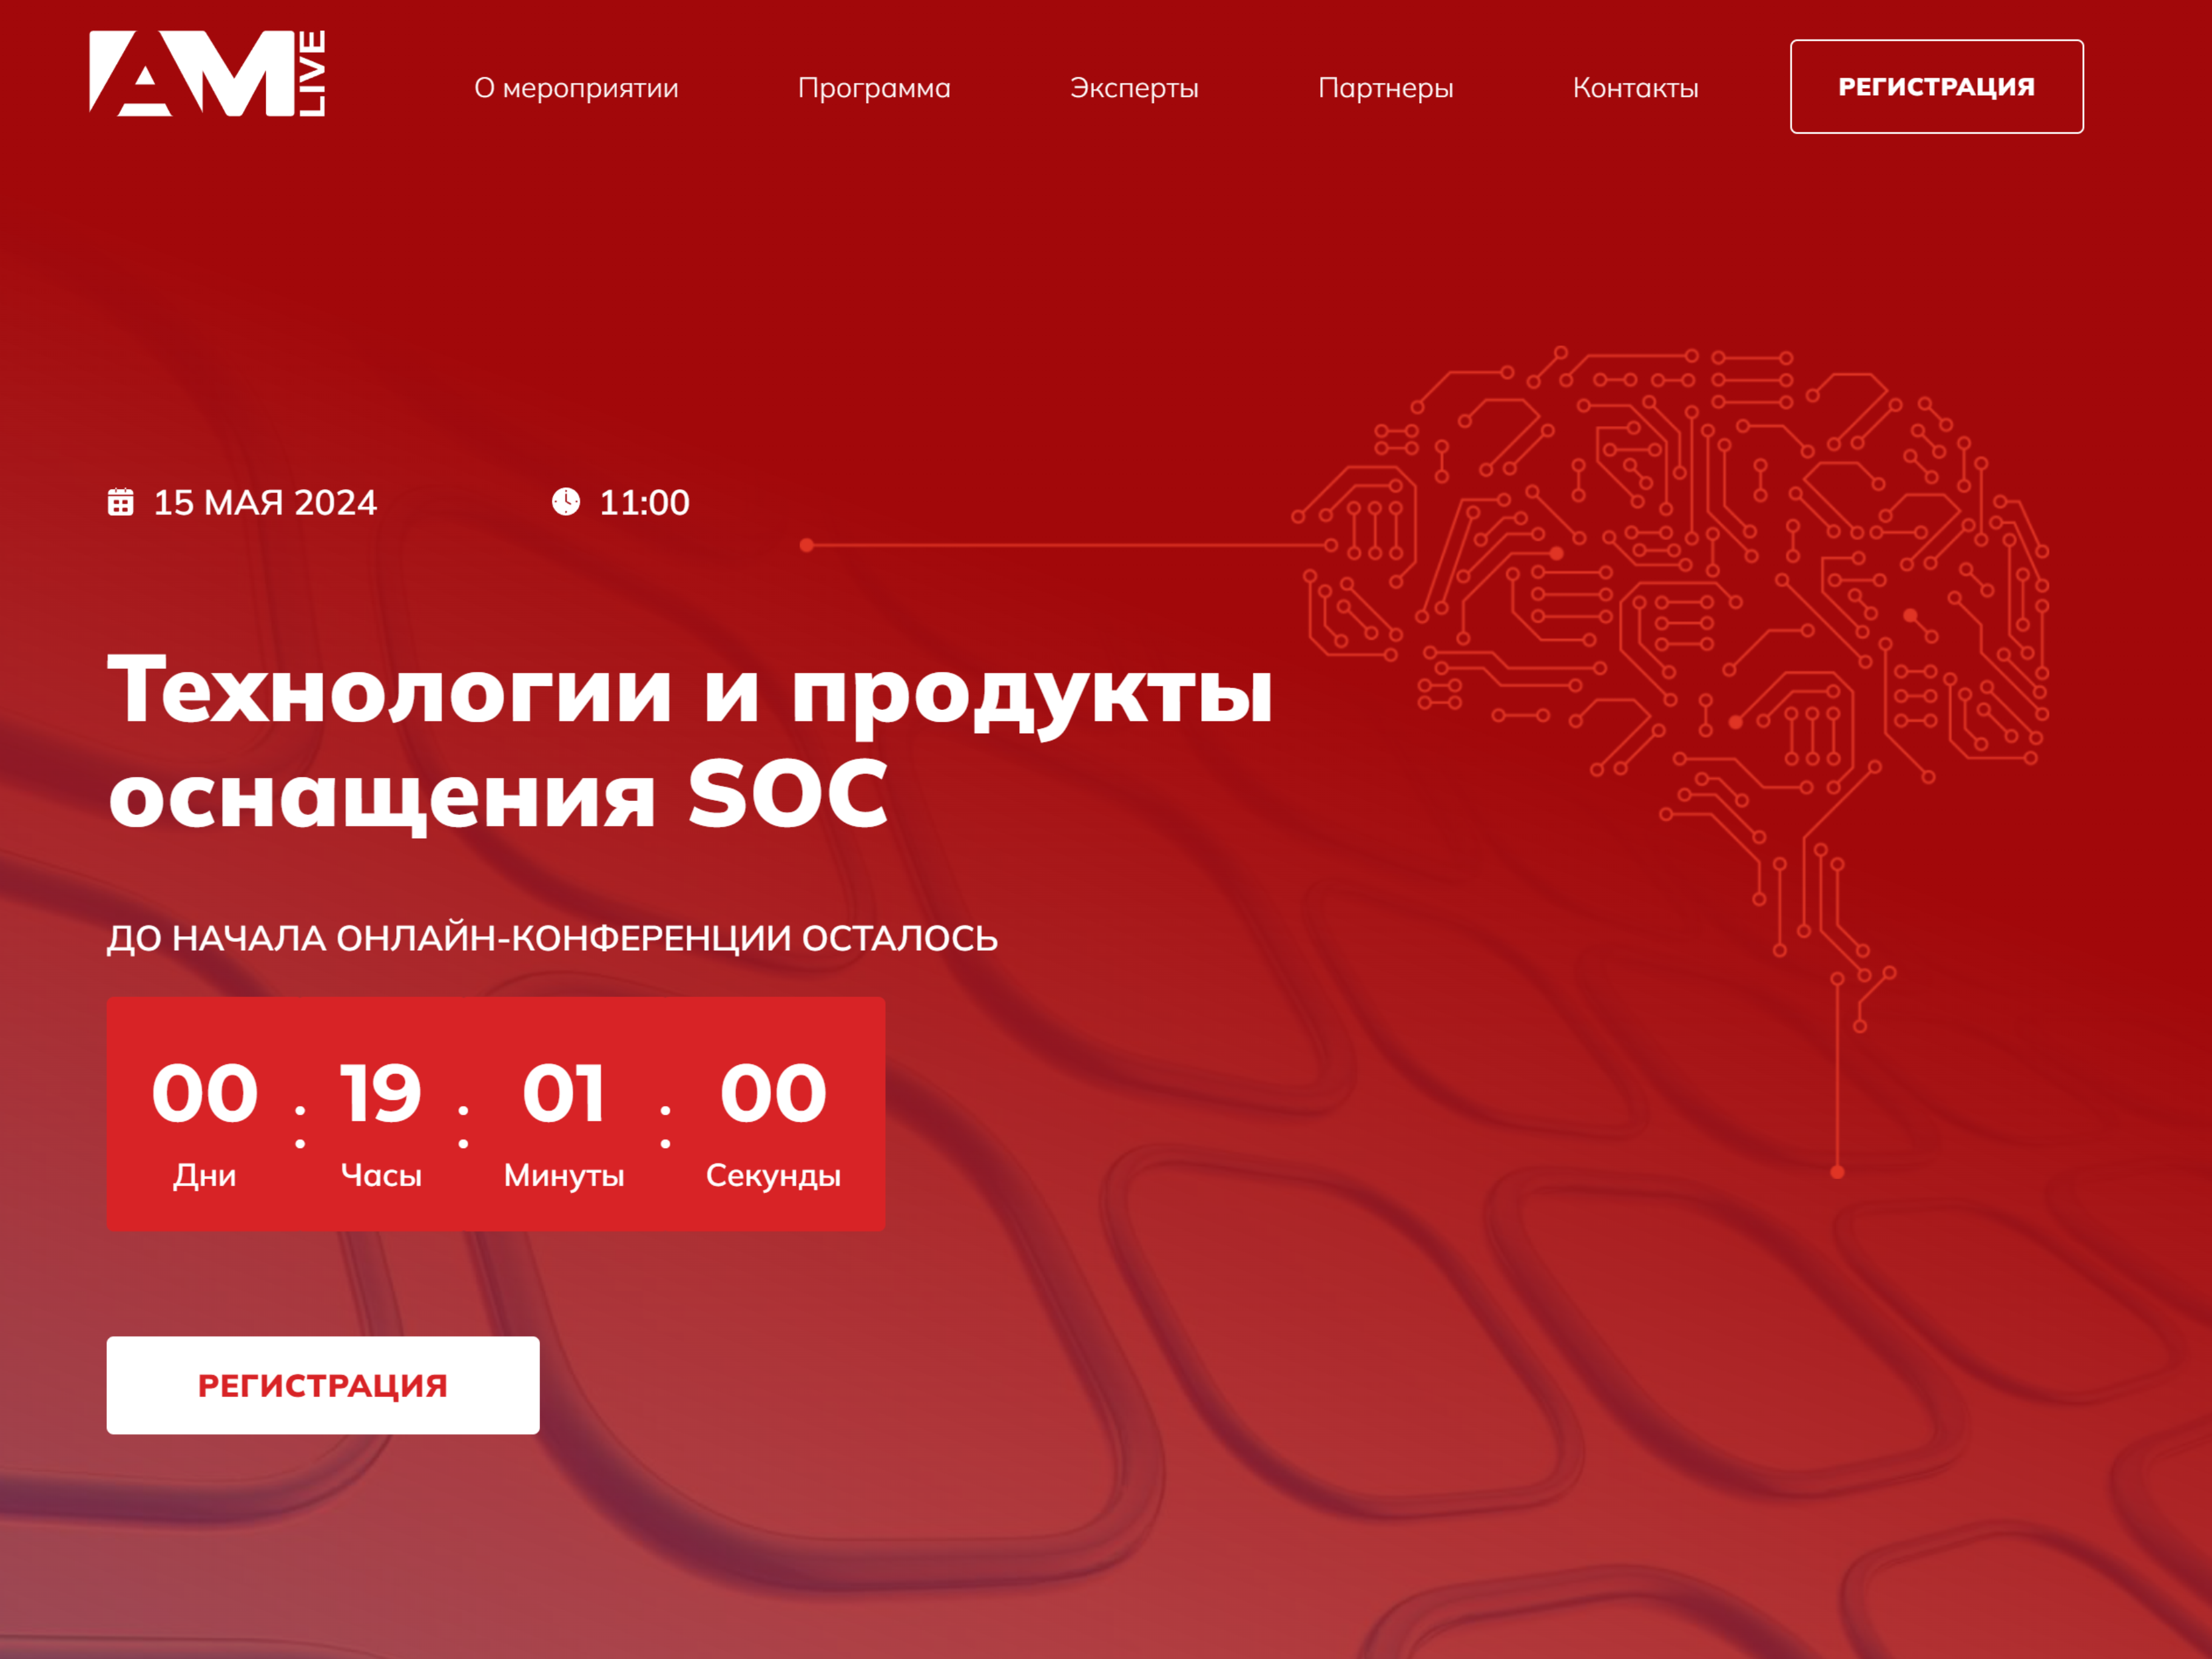 15 мая в 11:00 портал AM Live проводит онлайн-конференцию на тему “Технологии и продукты оснащения SOC”.